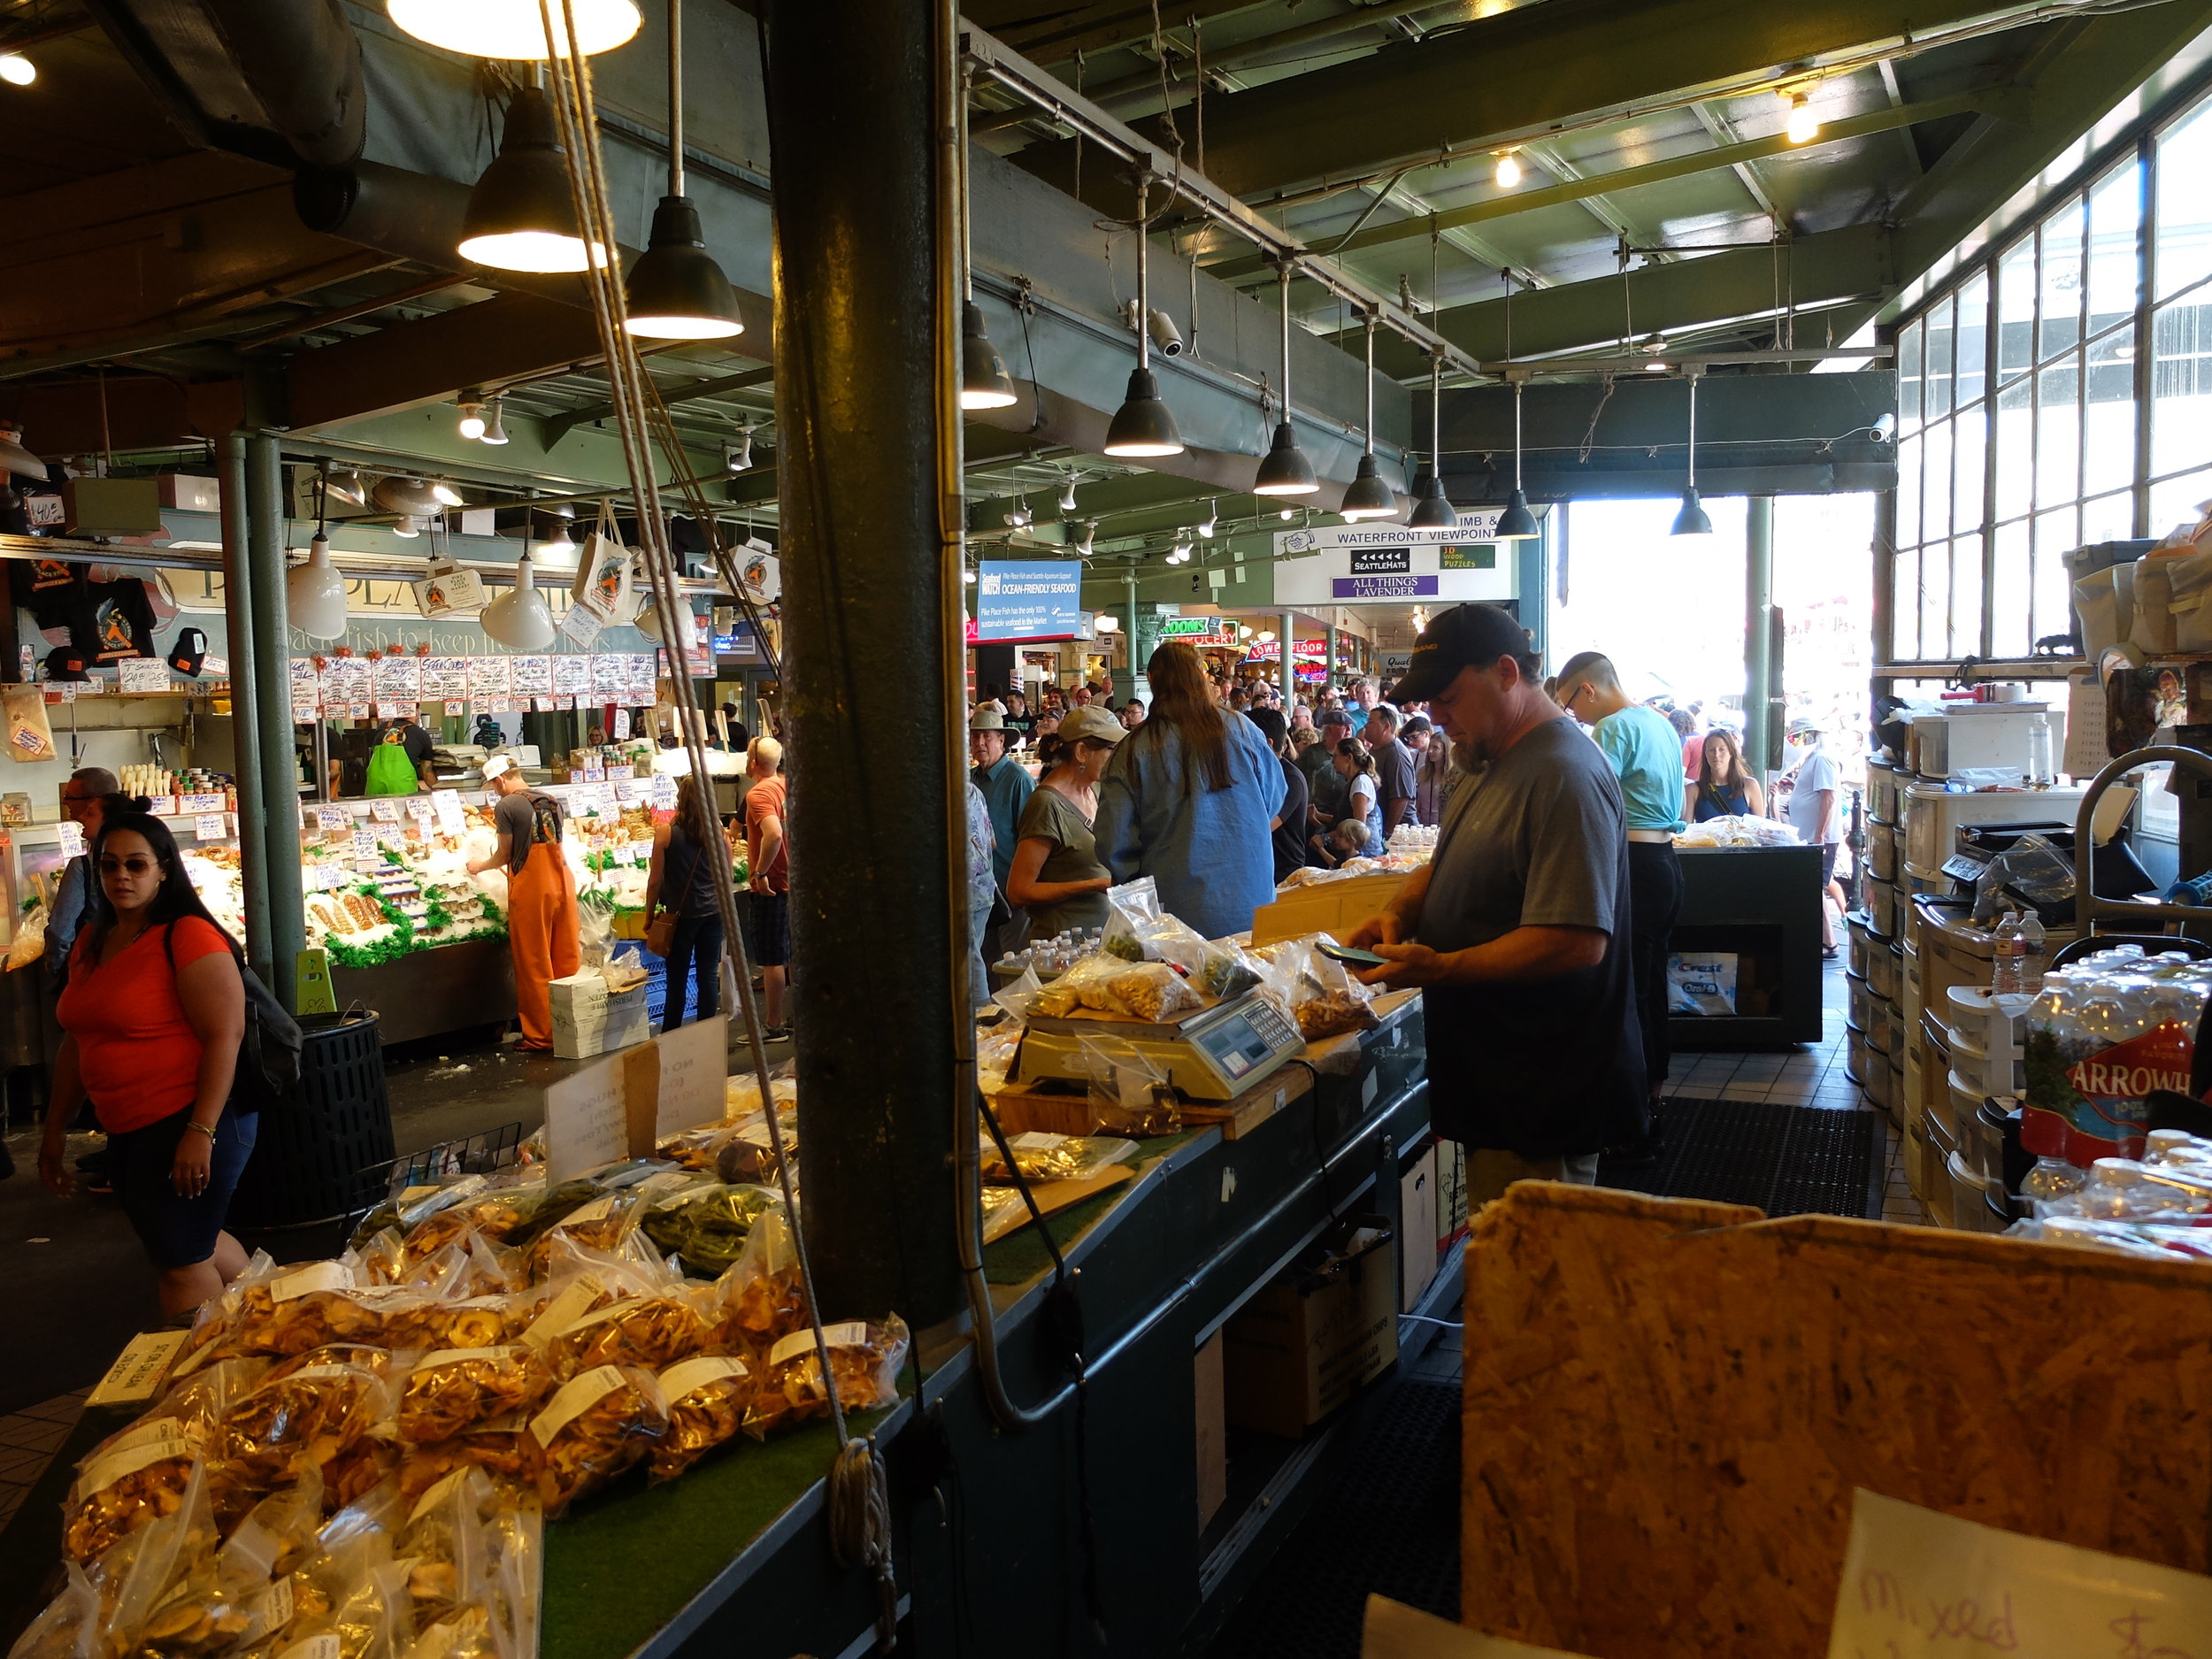  Pike Place Market, Seattle, WA 